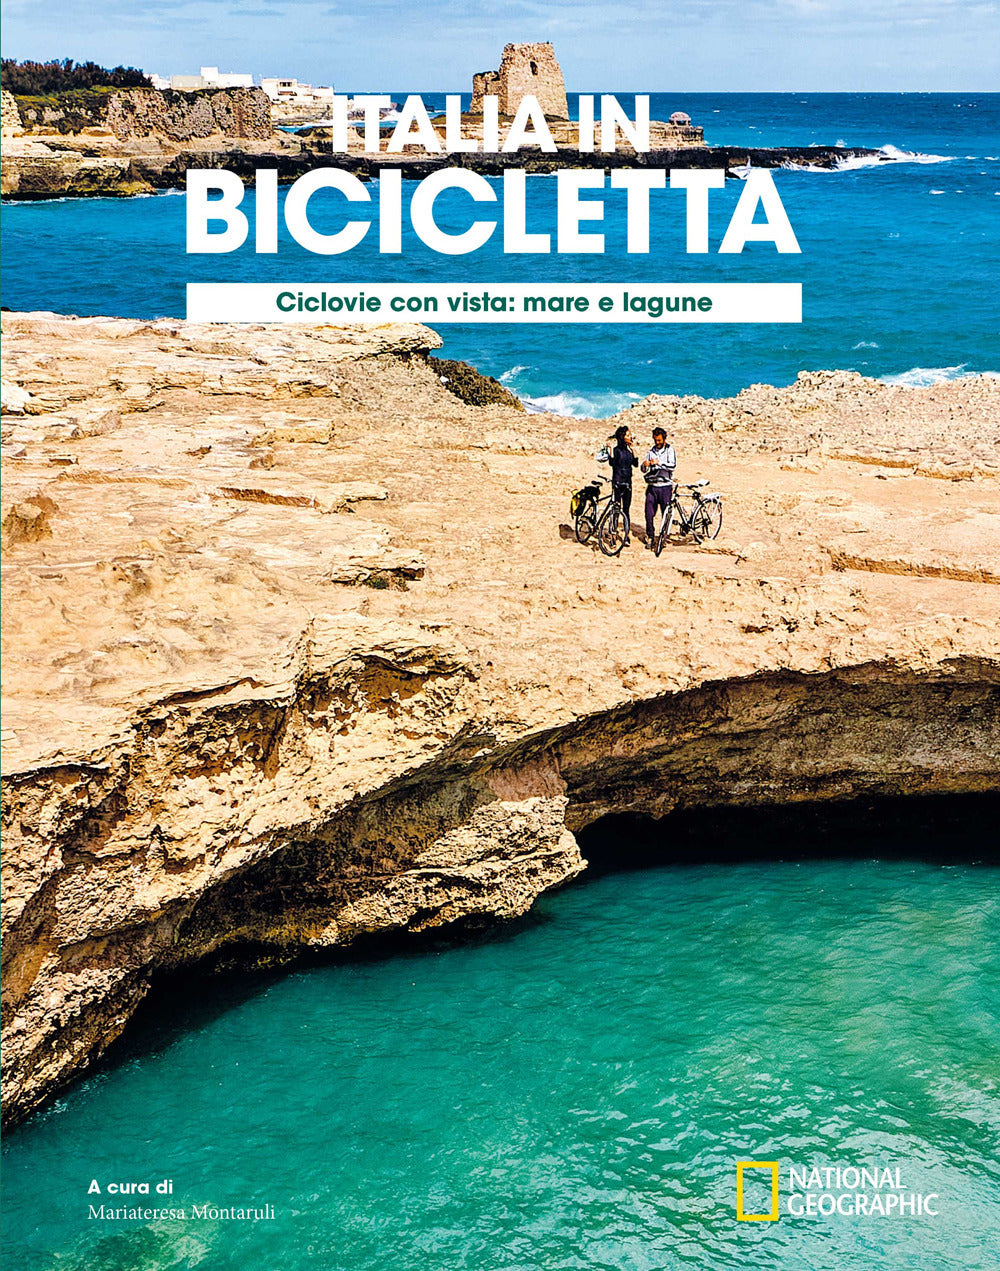 Ciclovie con vista: mare e lagune. Italia in bicicletta. National Geographic.